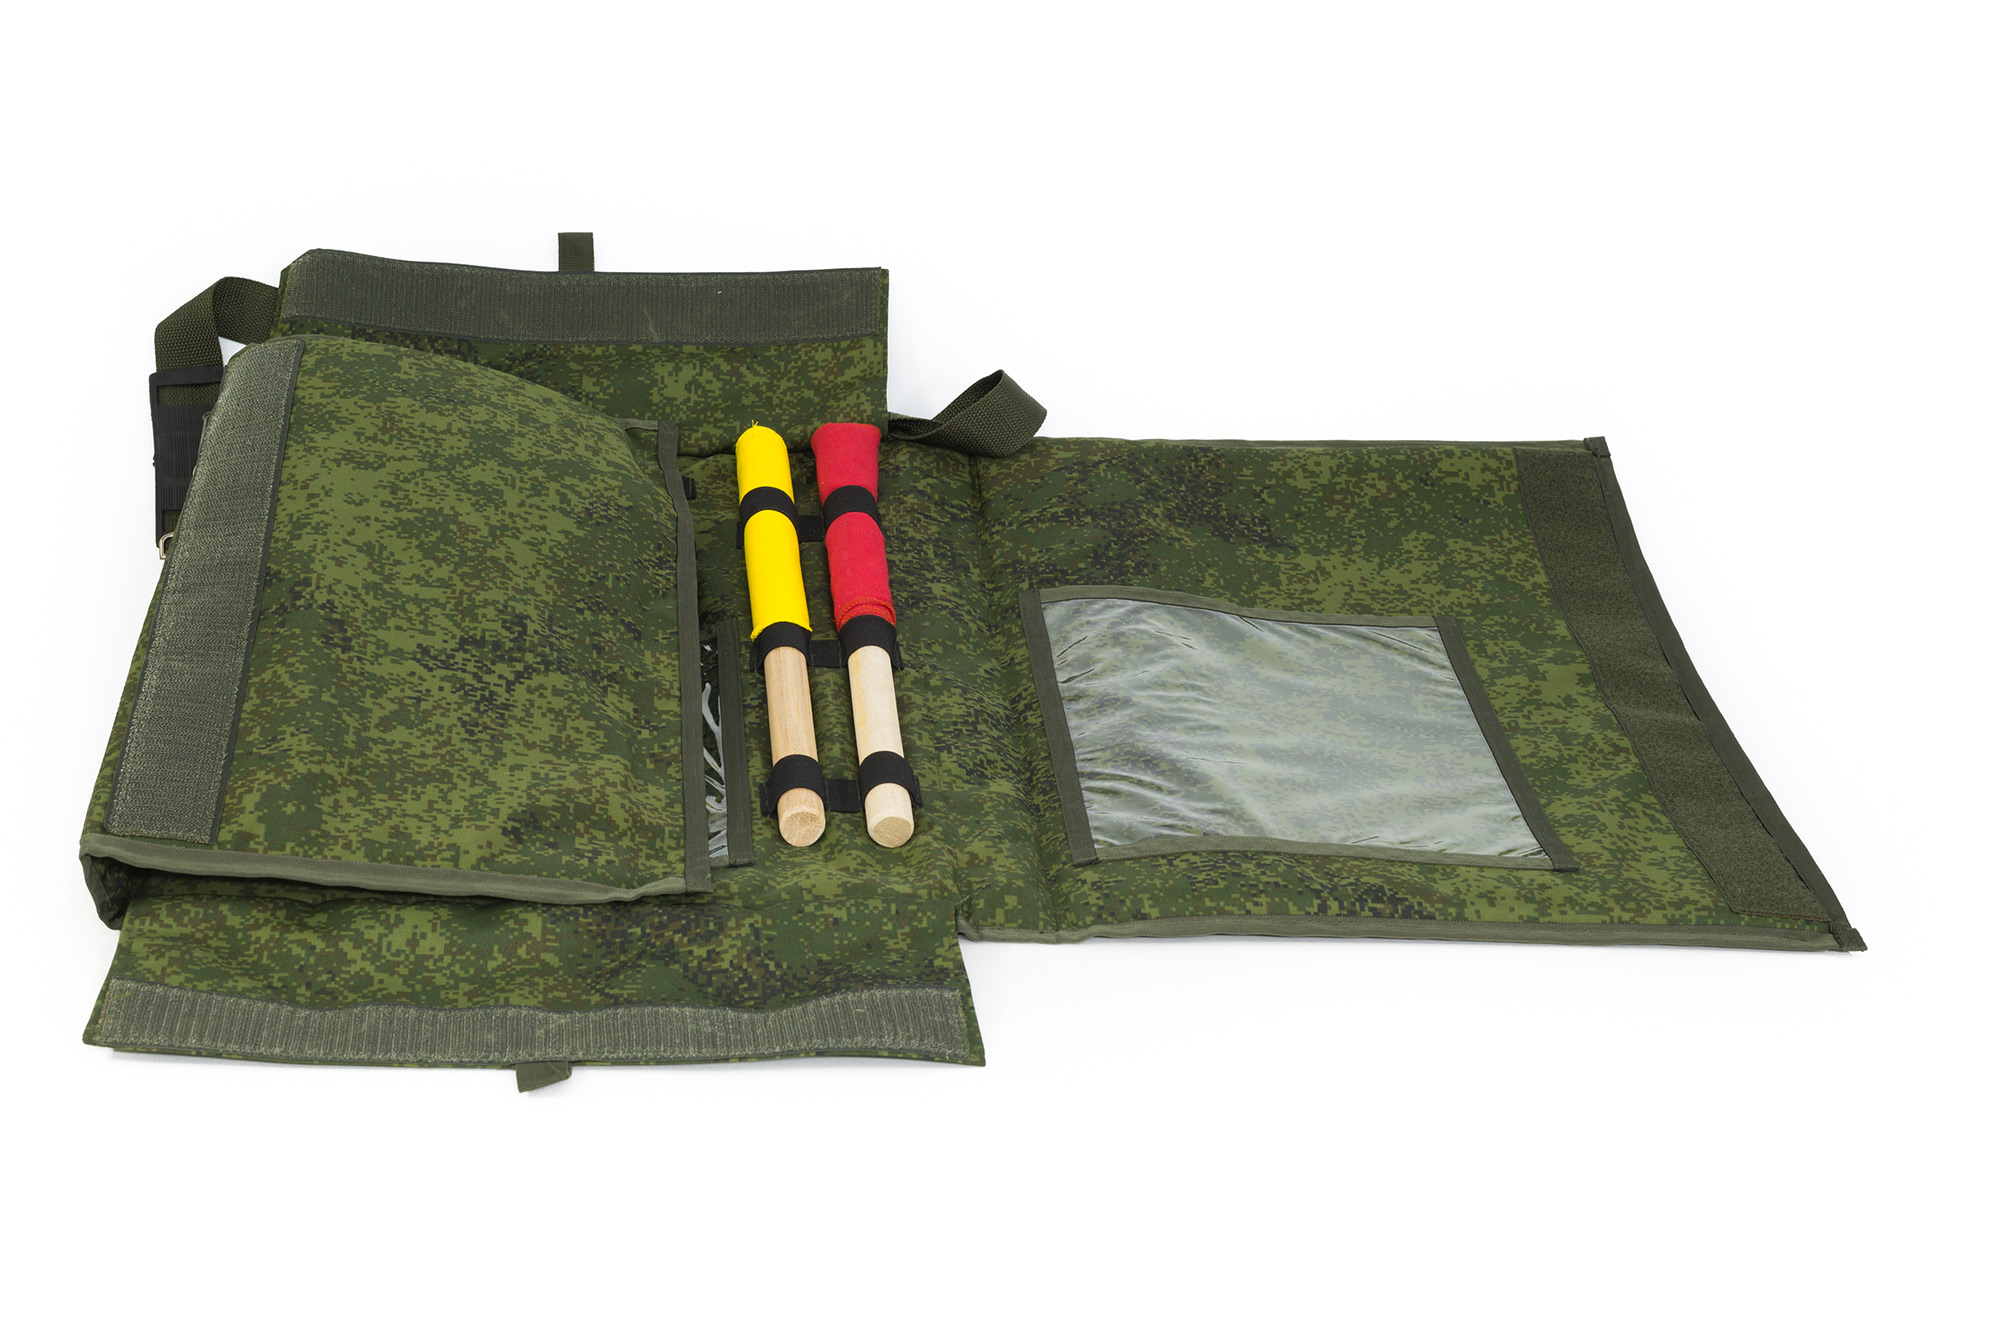 Учебный планшет №1, Предназначен для проведения занятий по боевой подготовке, пошив на заказ, сумка оптом, спб